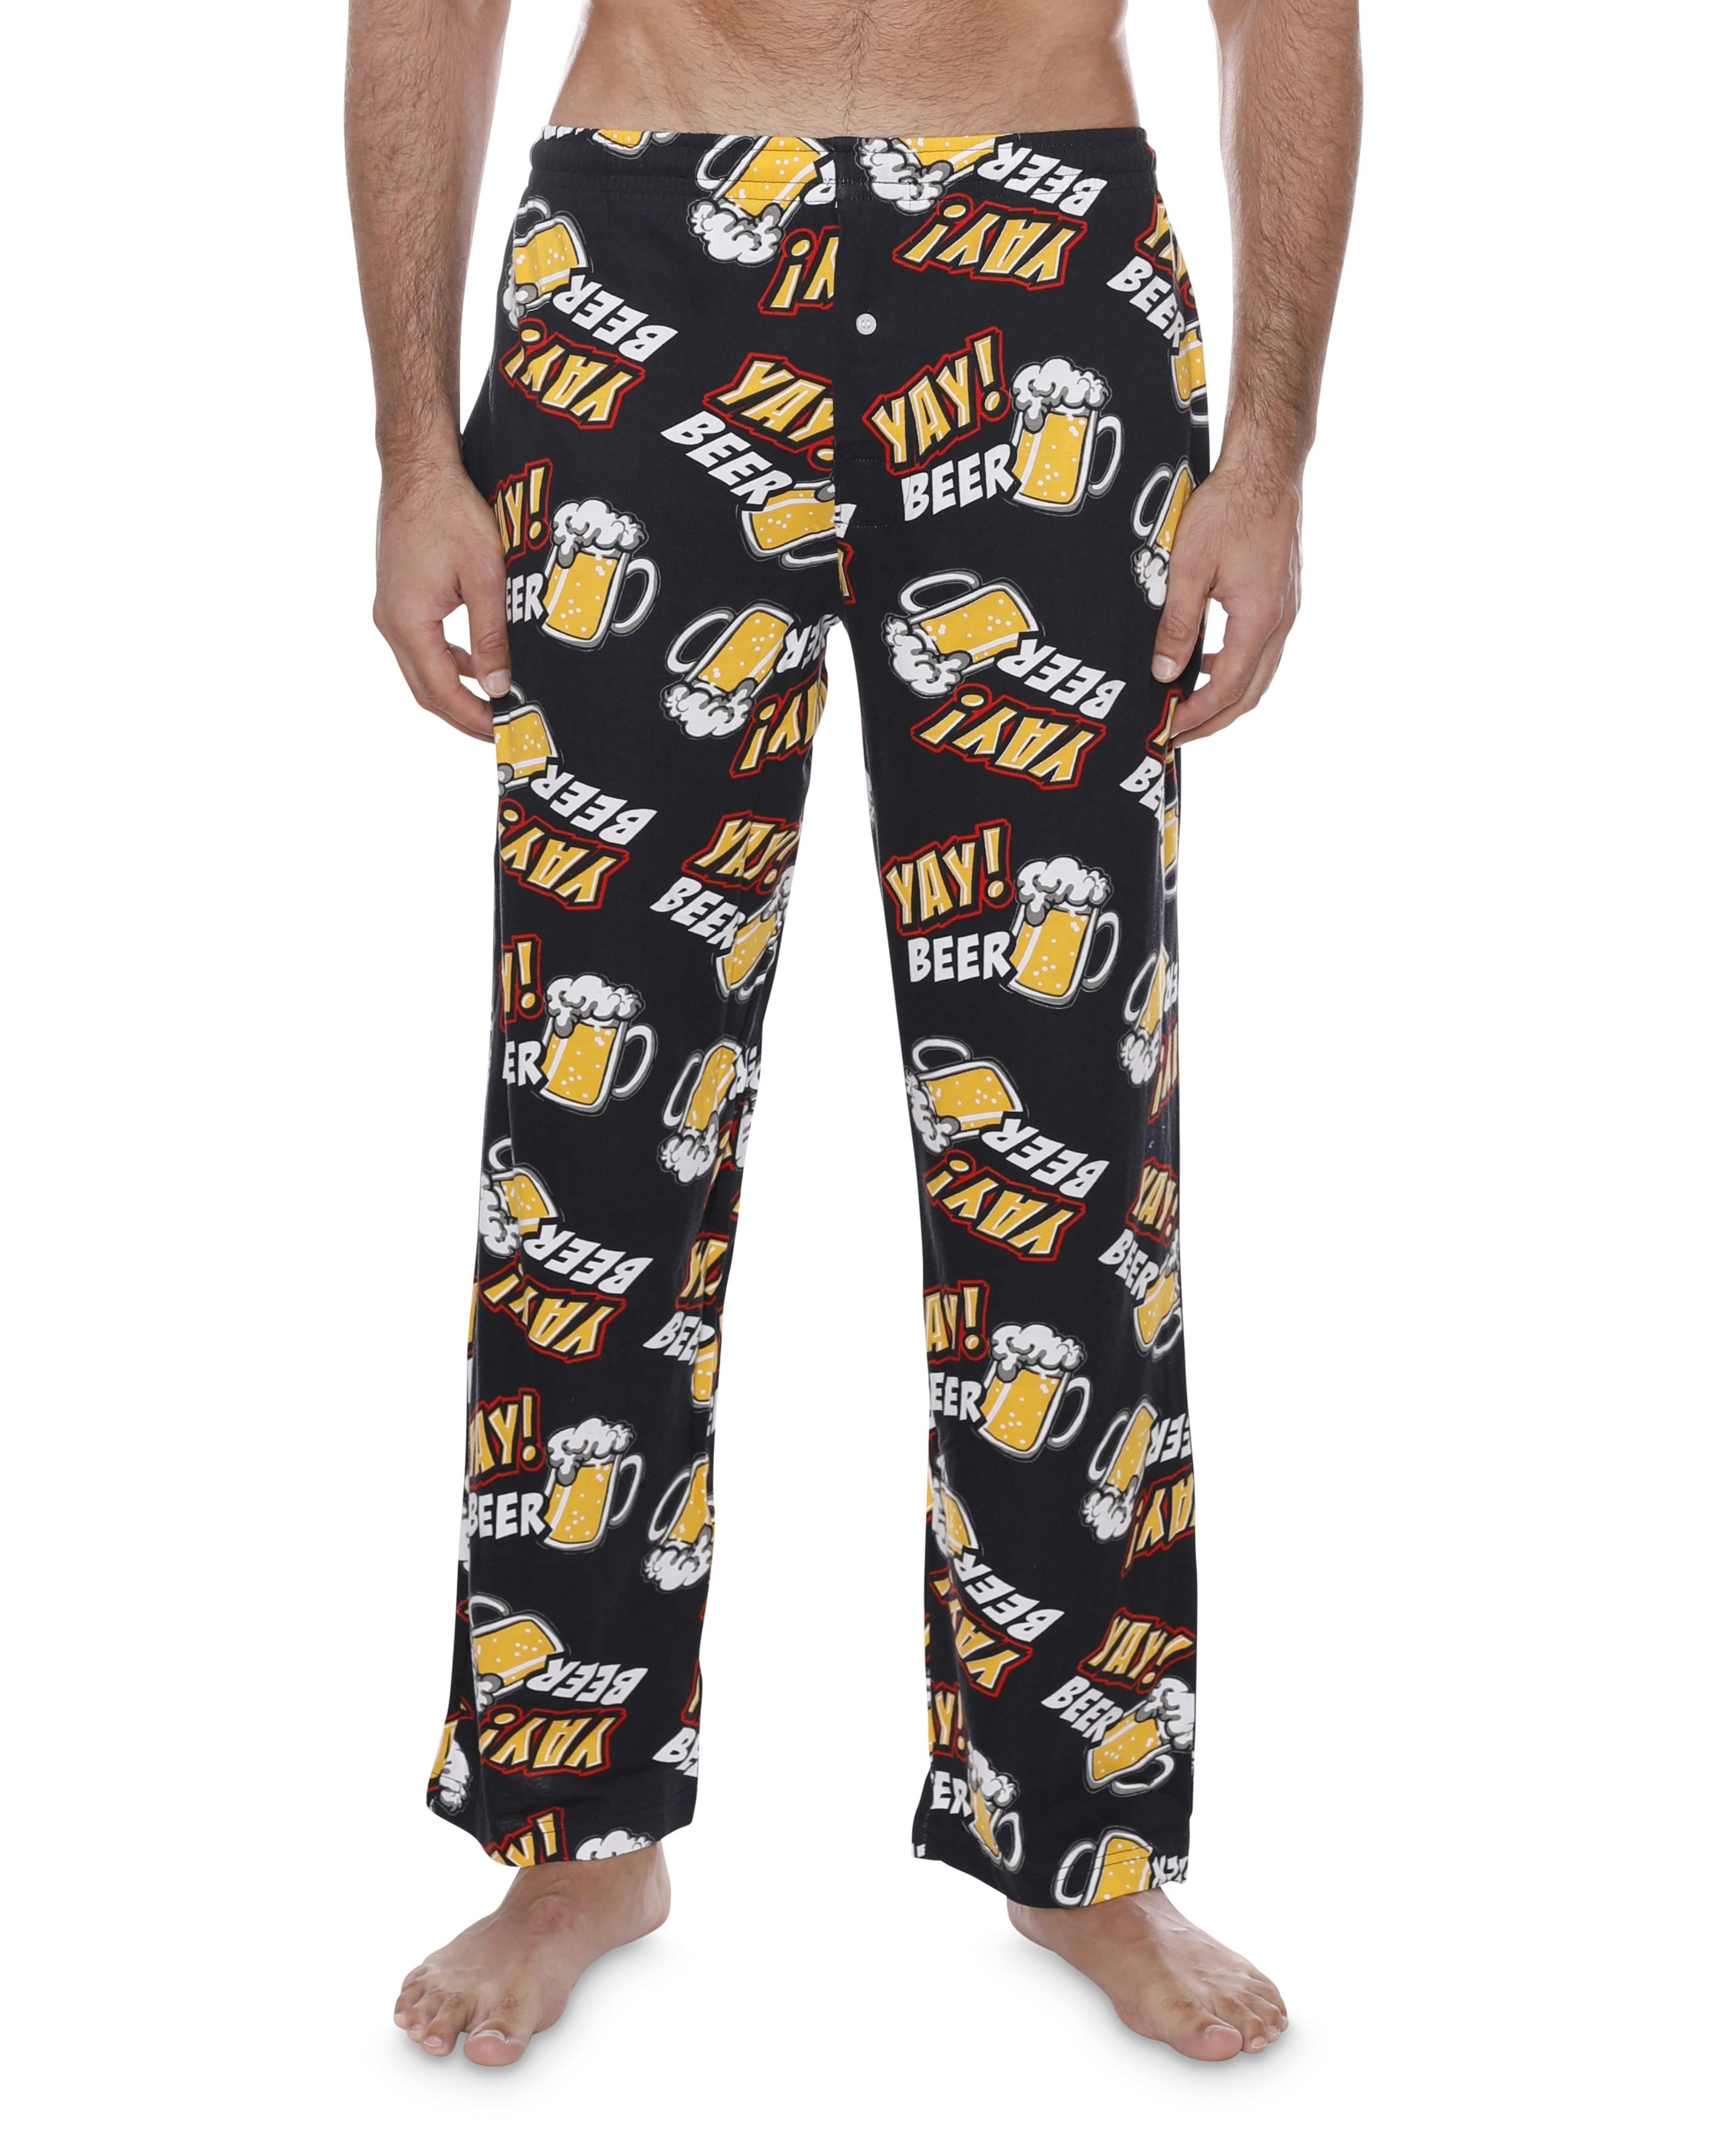 Mens Fun Pants Lounge Pajama Pants Boxers Adult Sleepwear, Yay Beer ...